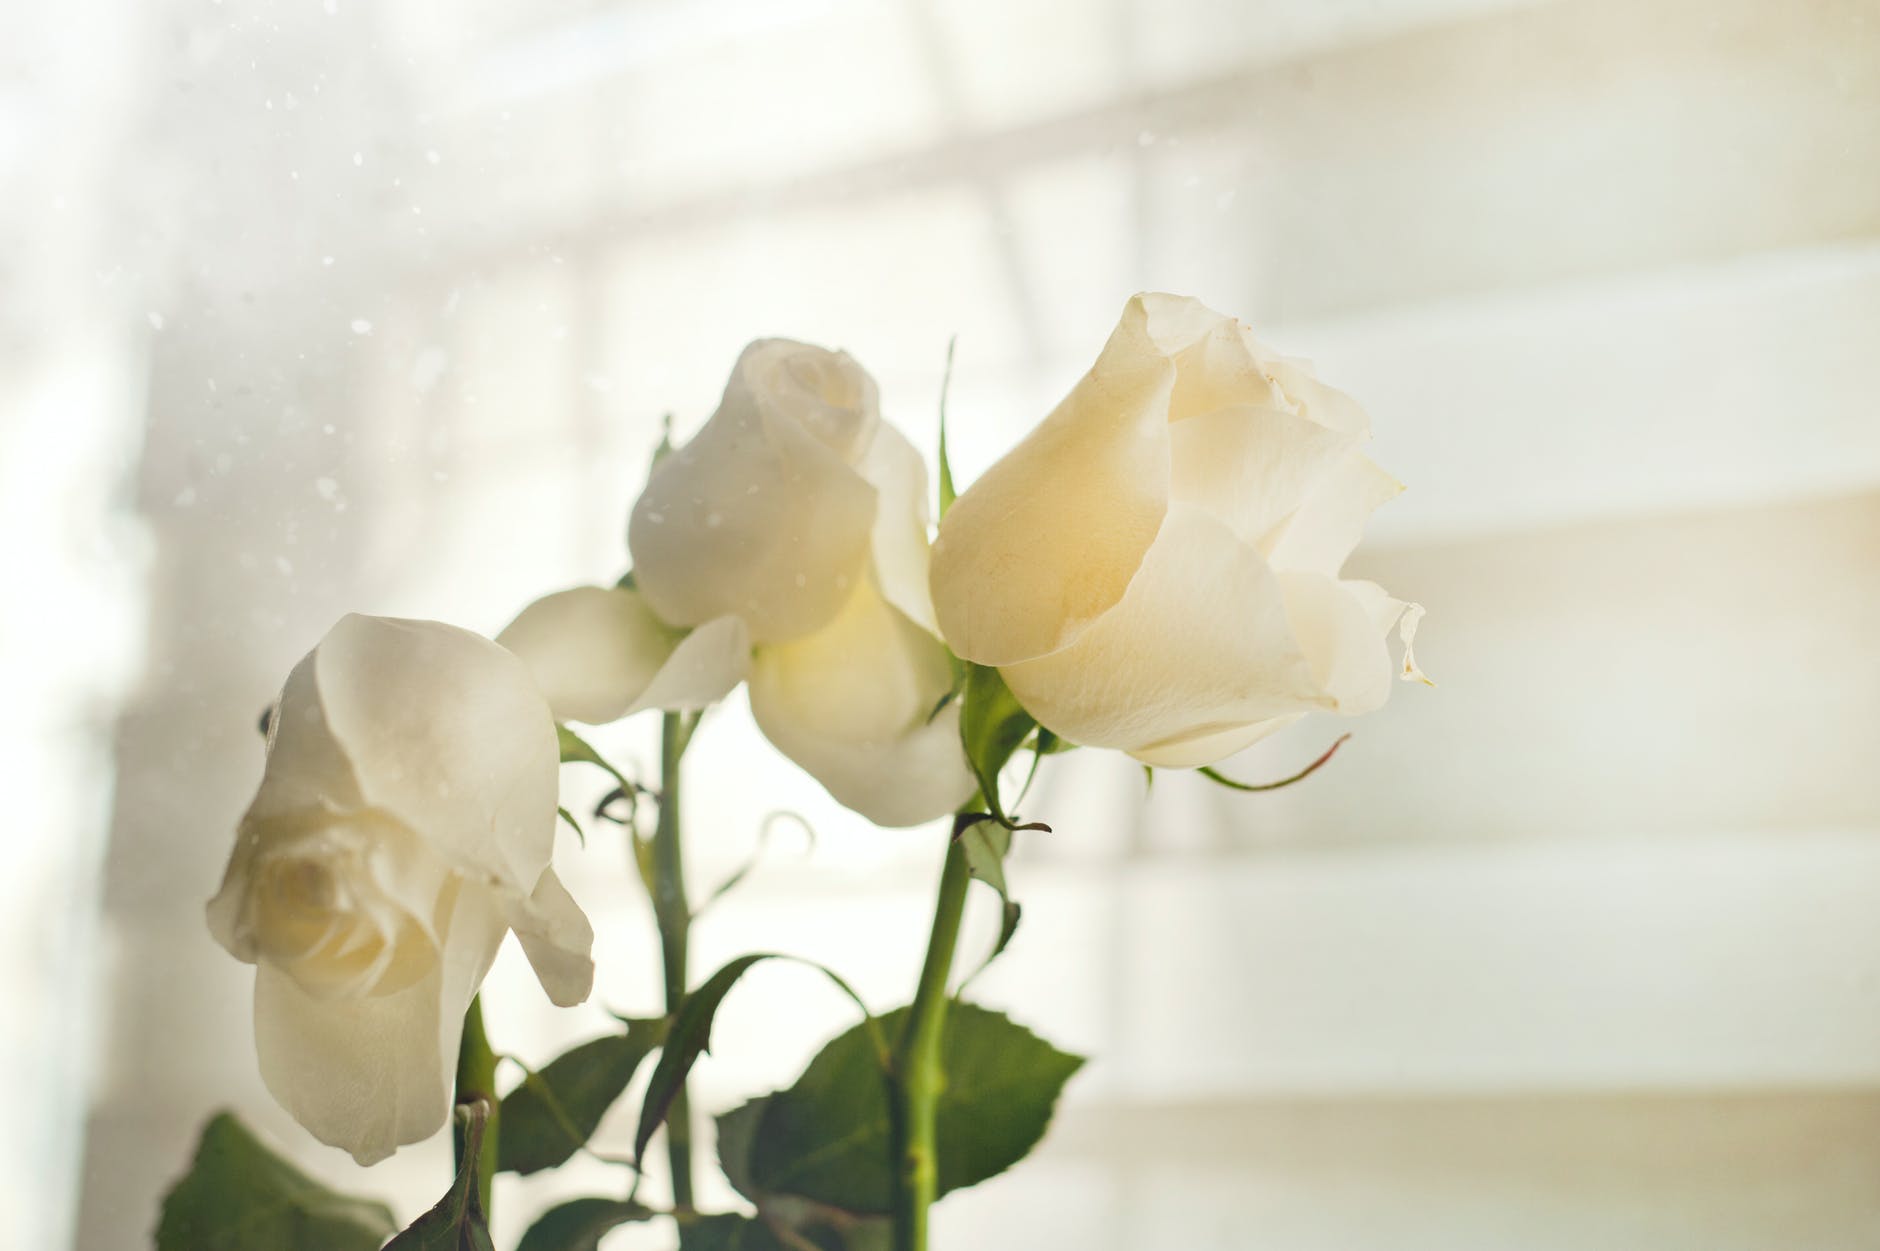 White Rose Image